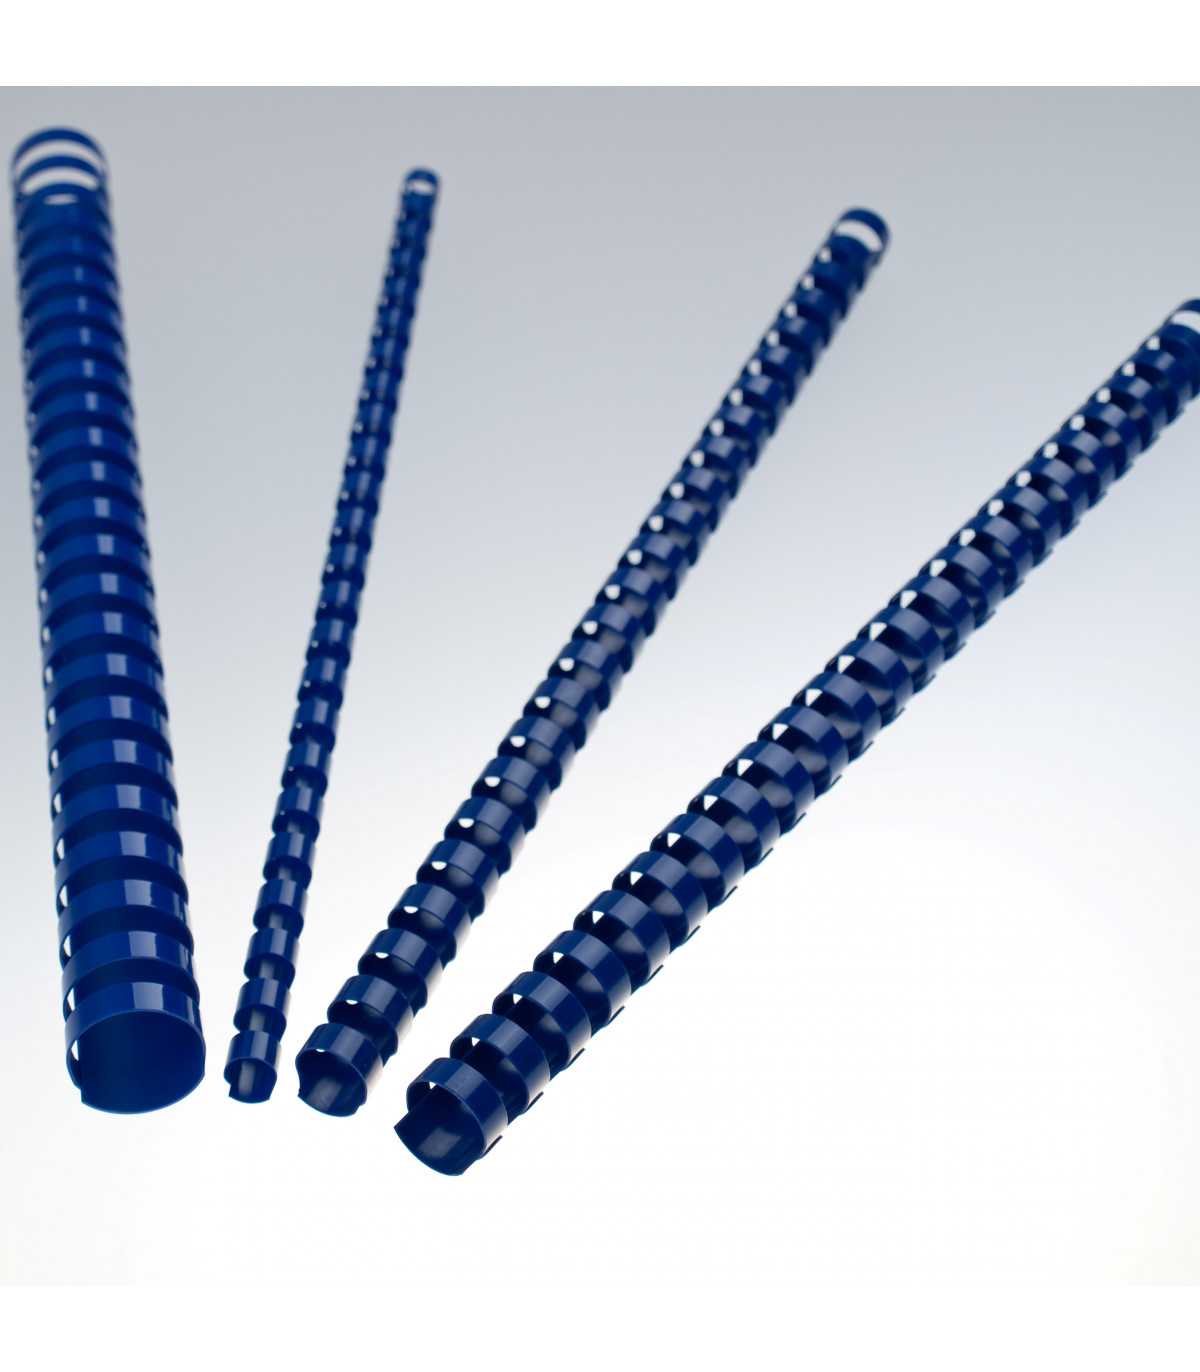 Dorsi plastici per rilegatura a 21 anelli - colore blu - Immagine Srl